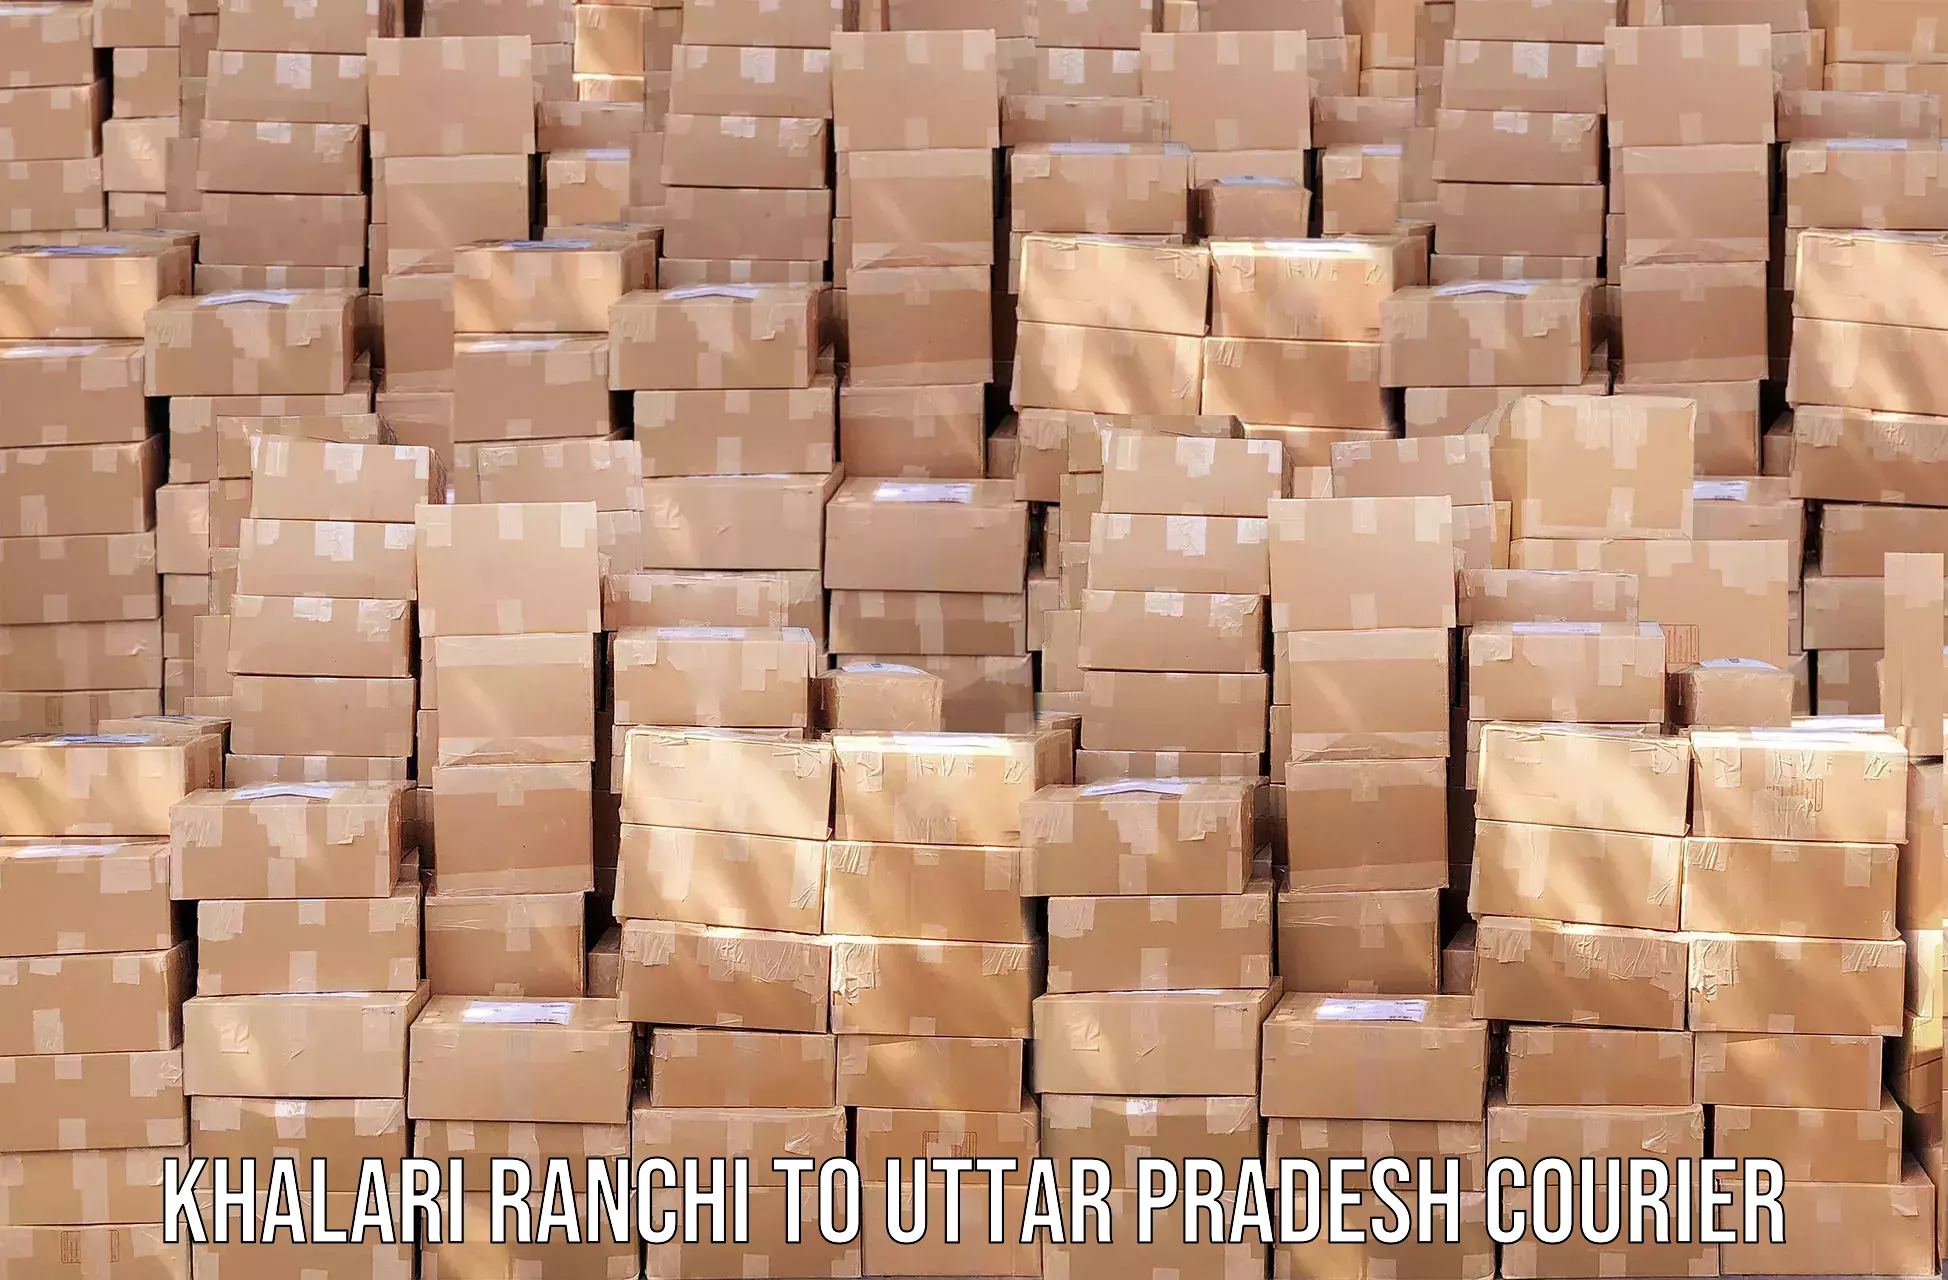 Fast-track shipping solutions Khalari Ranchi to Varanasi